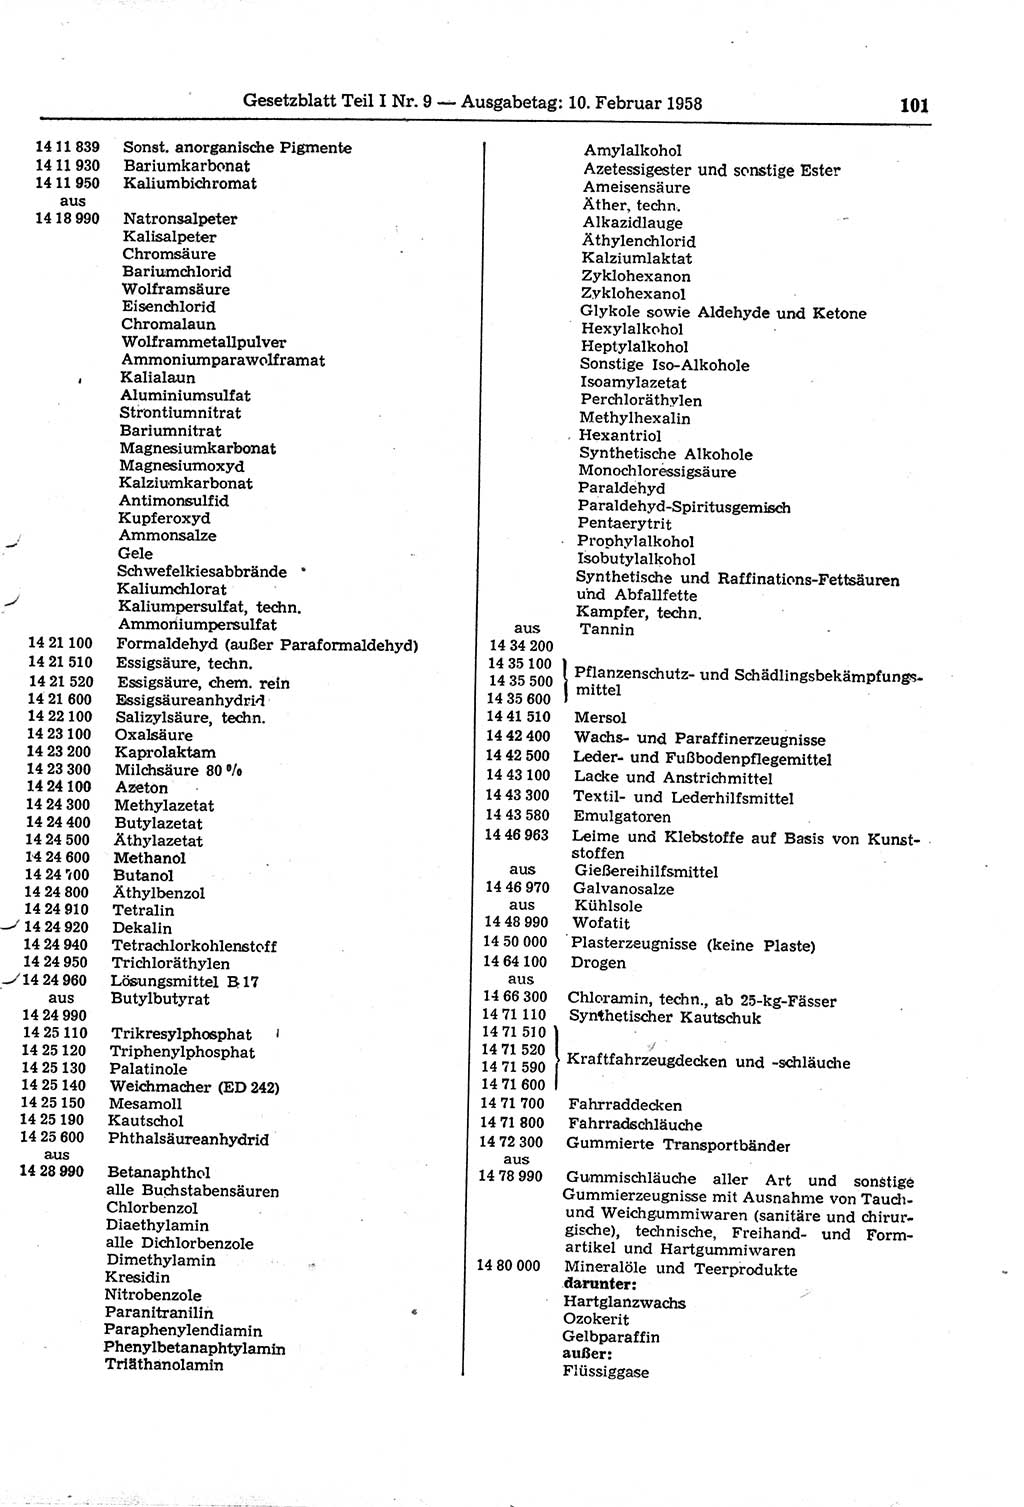 Gesetzblatt (GBl.) der Deutschen Demokratischen Republik (DDR) Teil Ⅰ 1958, Seite 101 (GBl. DDR Ⅰ 1958, S. 101)